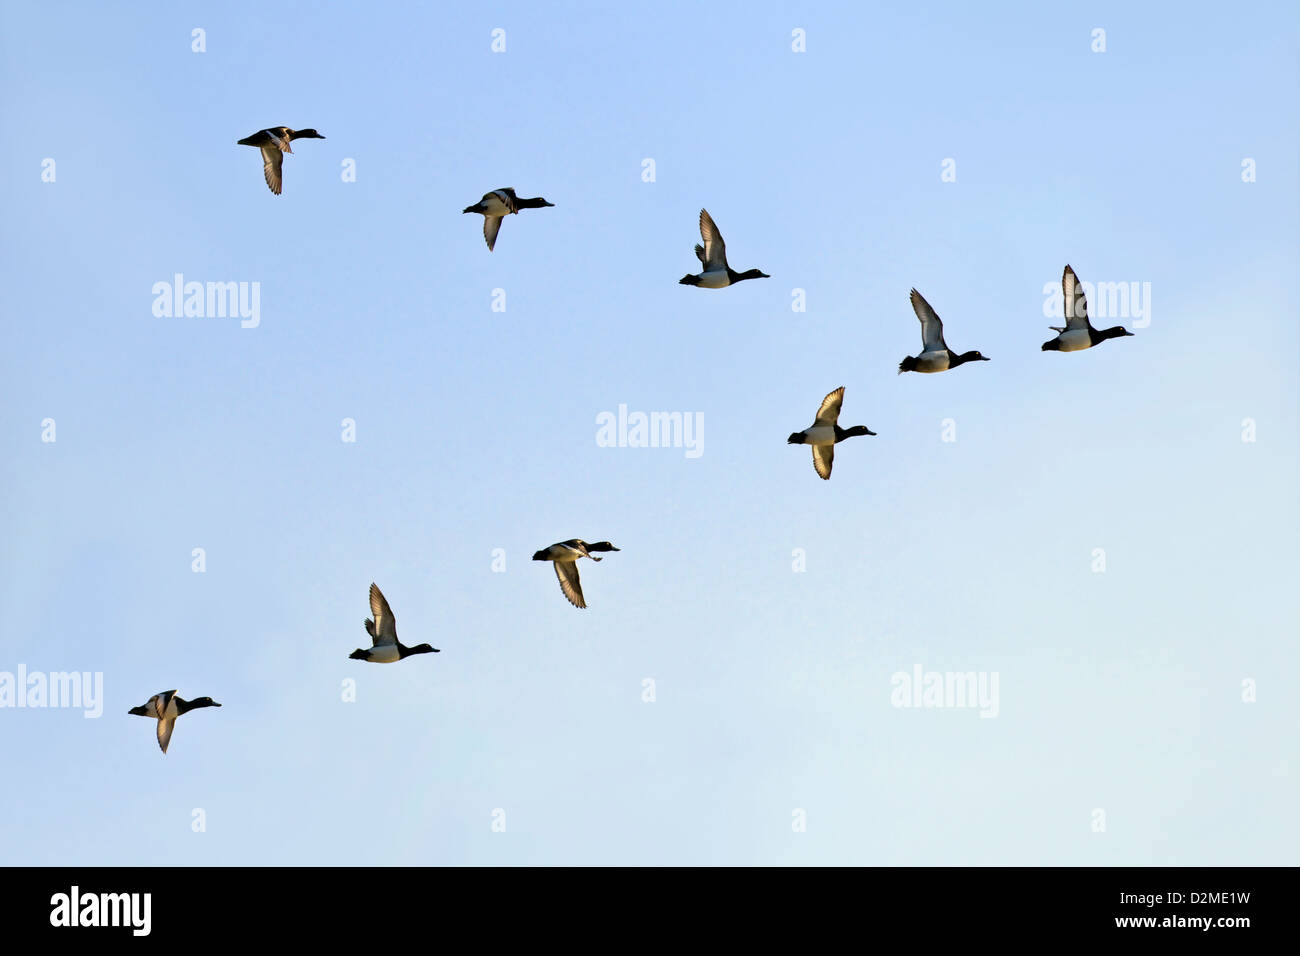 Eine kleine Herde von Scaup fliegen in ein 'V'-Formation mit lichtdurchfluteten Flügeln vor blauem Himmel Stockfoto